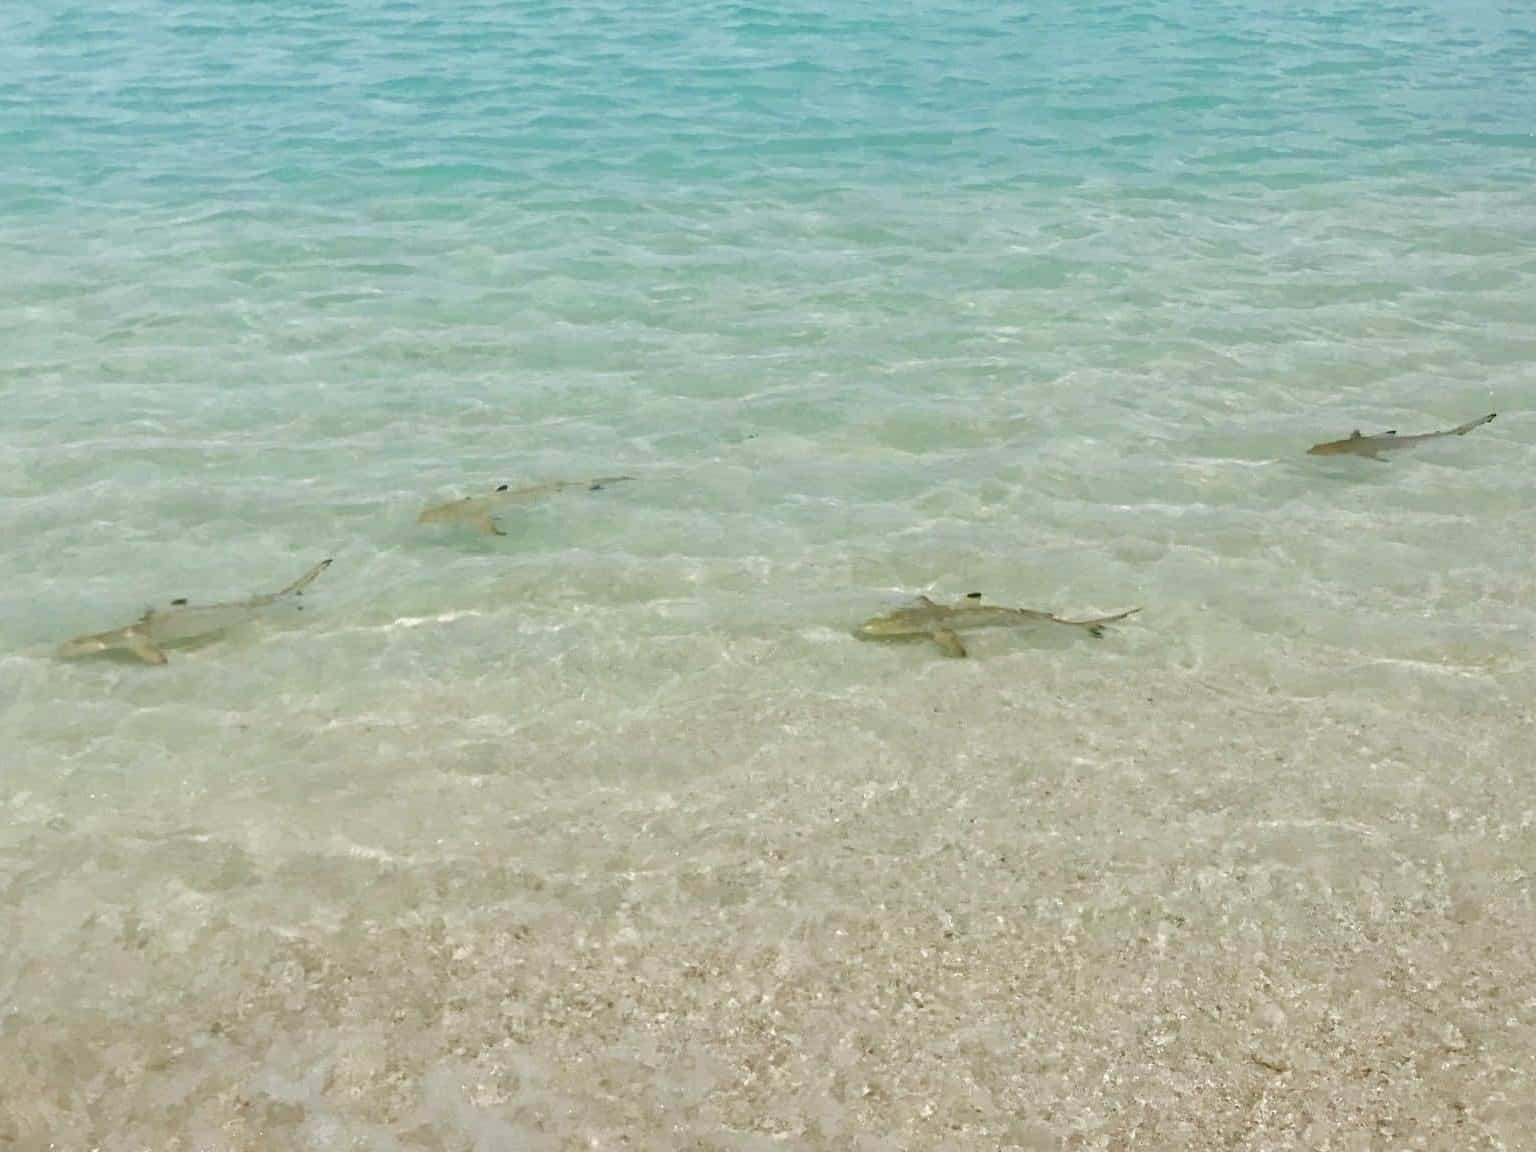 Especies de tiburones en las Maldivas: ¿peligrosas para los turistas cuando nadan?